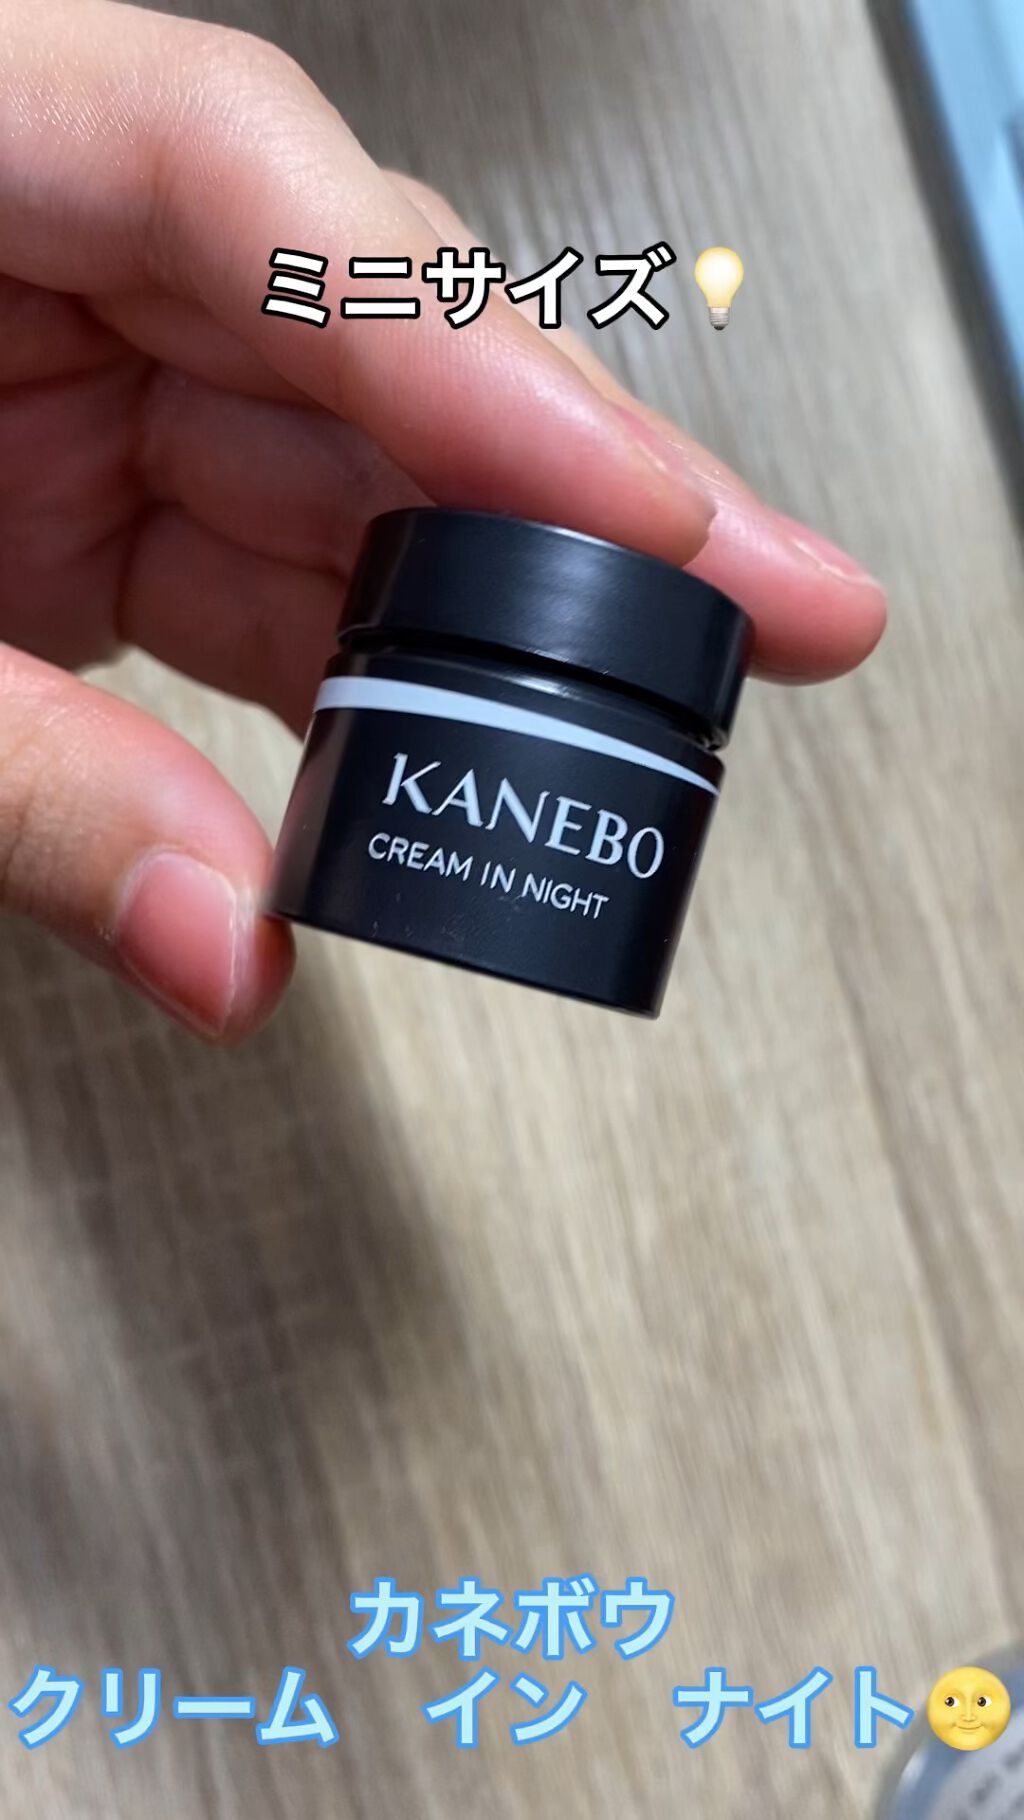 注目ショップ・ブランドのギフト KANEBO クリームインナイト5包